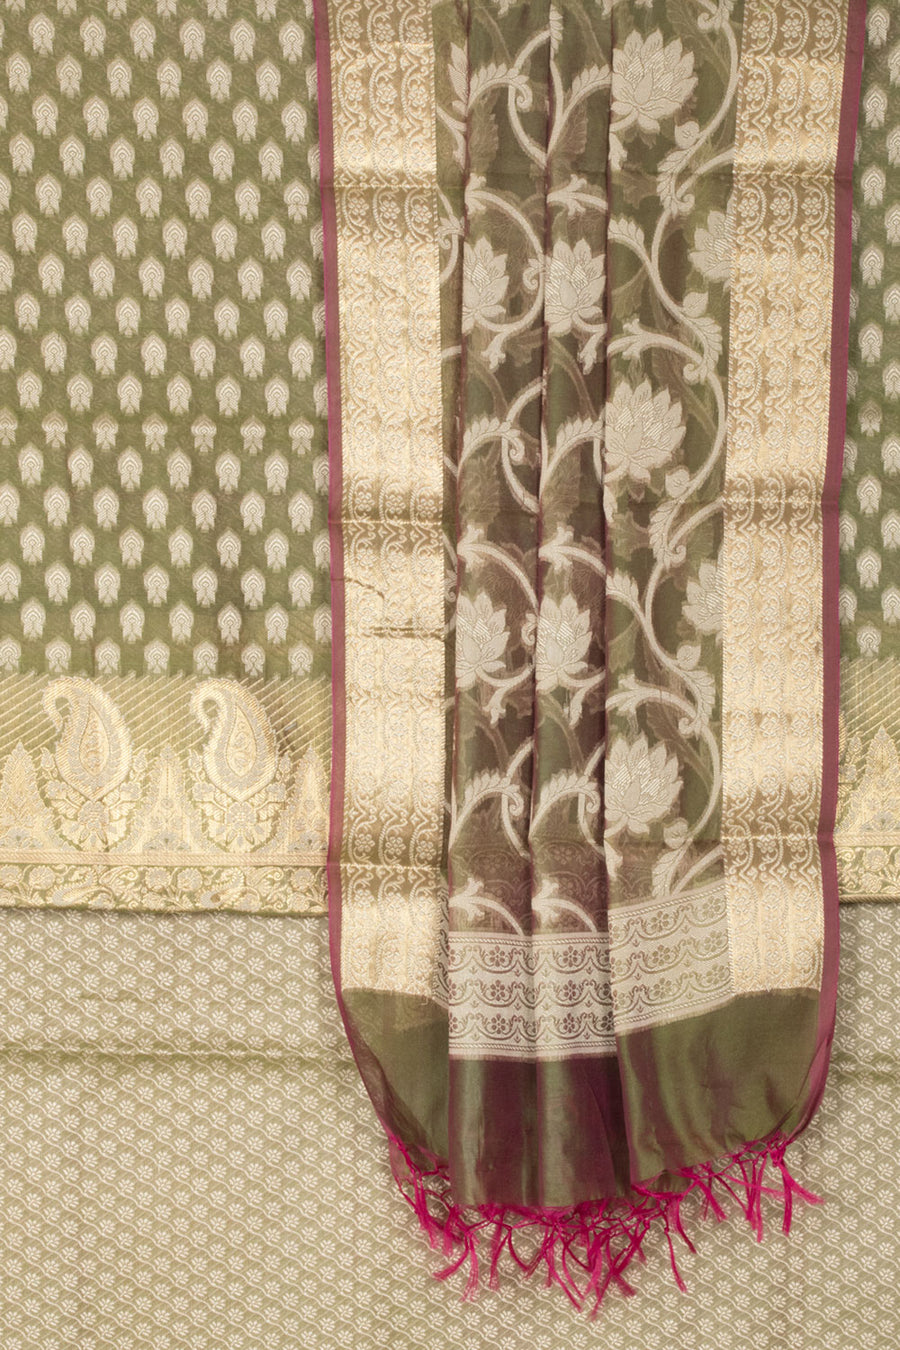 Avocado green Banarasi Katrua Cotton 3-Piece Salwar Suit Material With Floral and Paisley Motifs